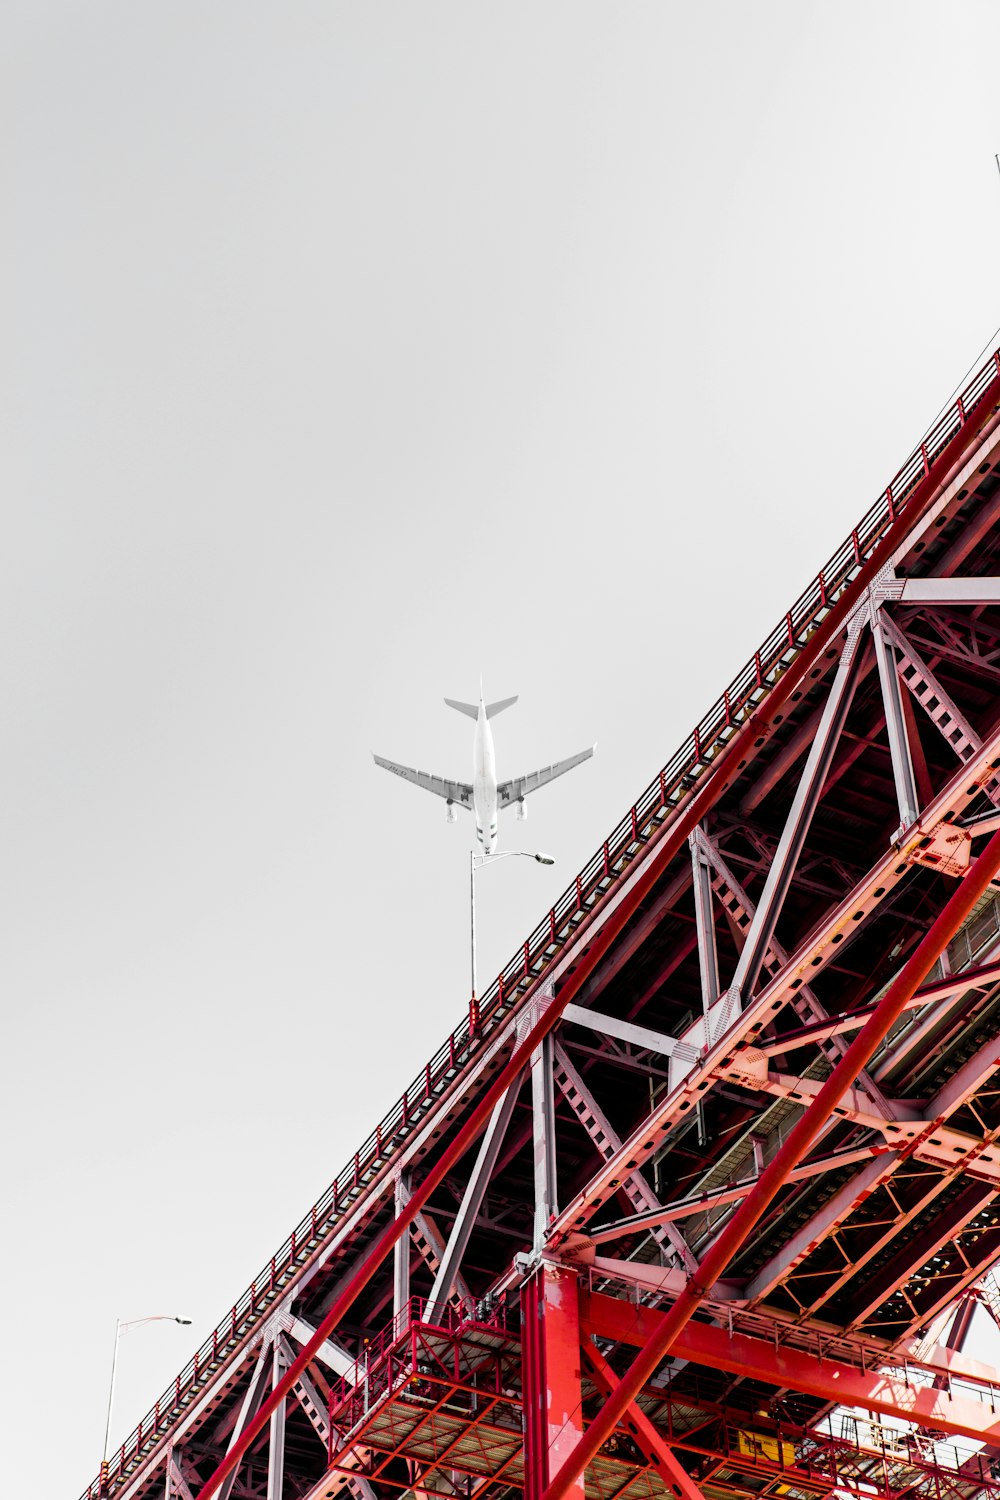 Photographie en contre-plongée d’un avion de transport au-dessus du pont